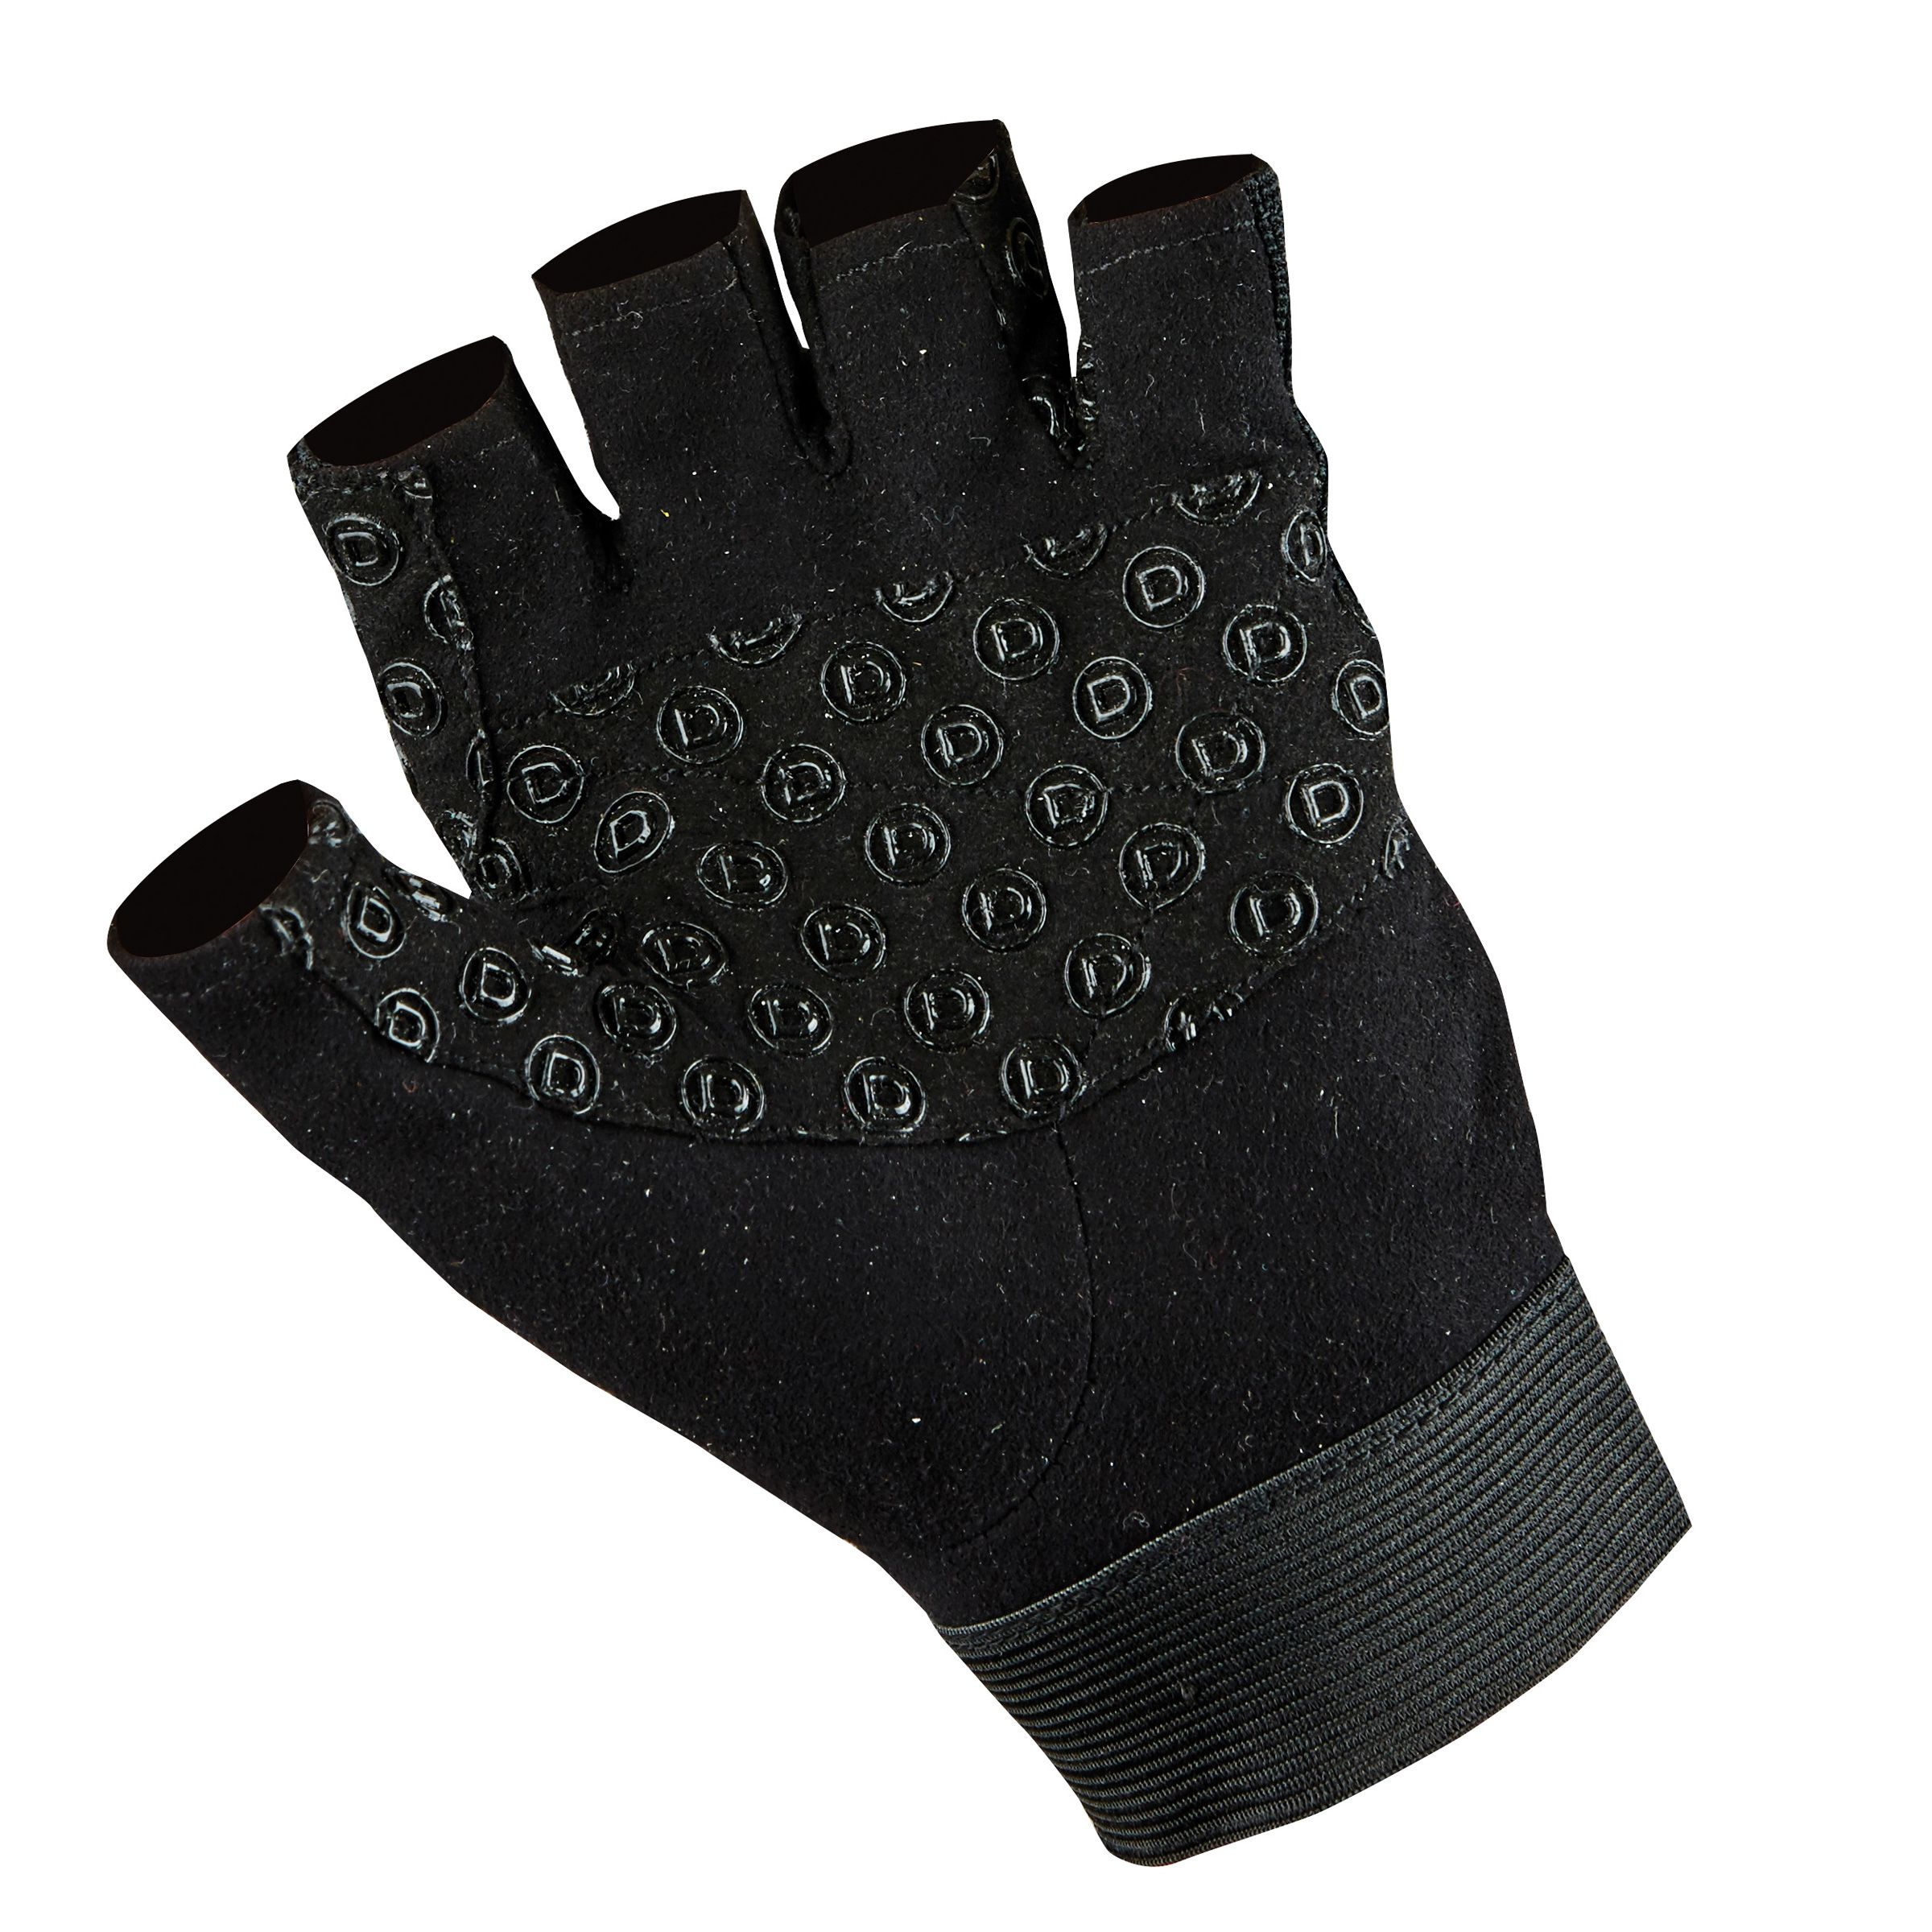 Dublin Fingerless Cross Country Riding Gloves Black